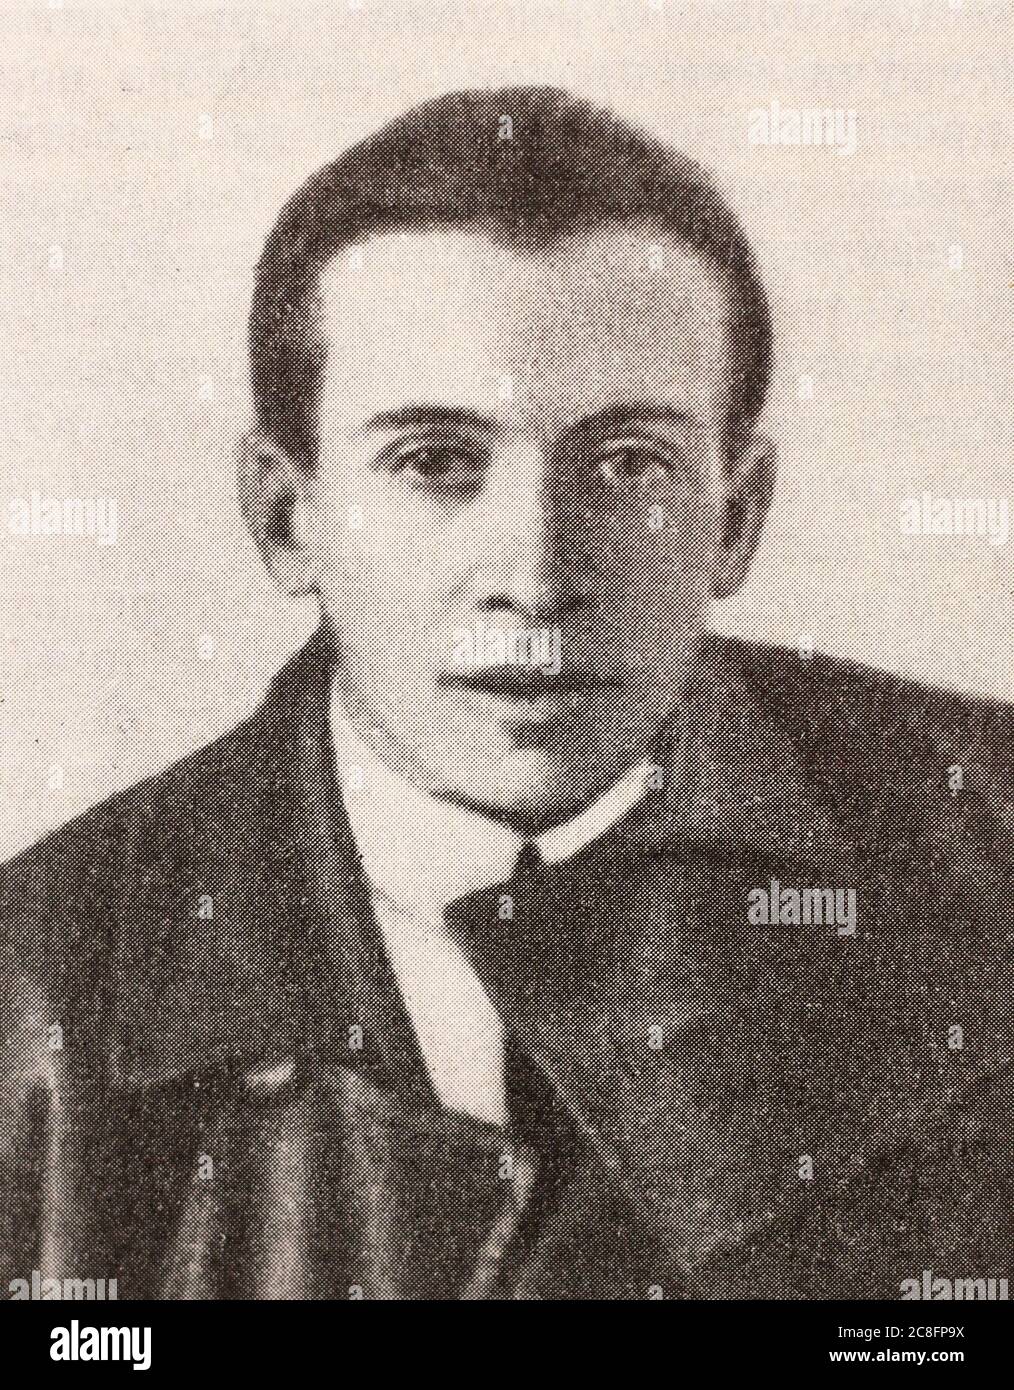 Tibor Szamuely (1890-1919) è stato un politico e giornalista ungherese che è stato vice Commissario popolare di guerra e Commissario popolare di pubblica istruzione durante la Repubblica sovietica ungherese. Foto Stock